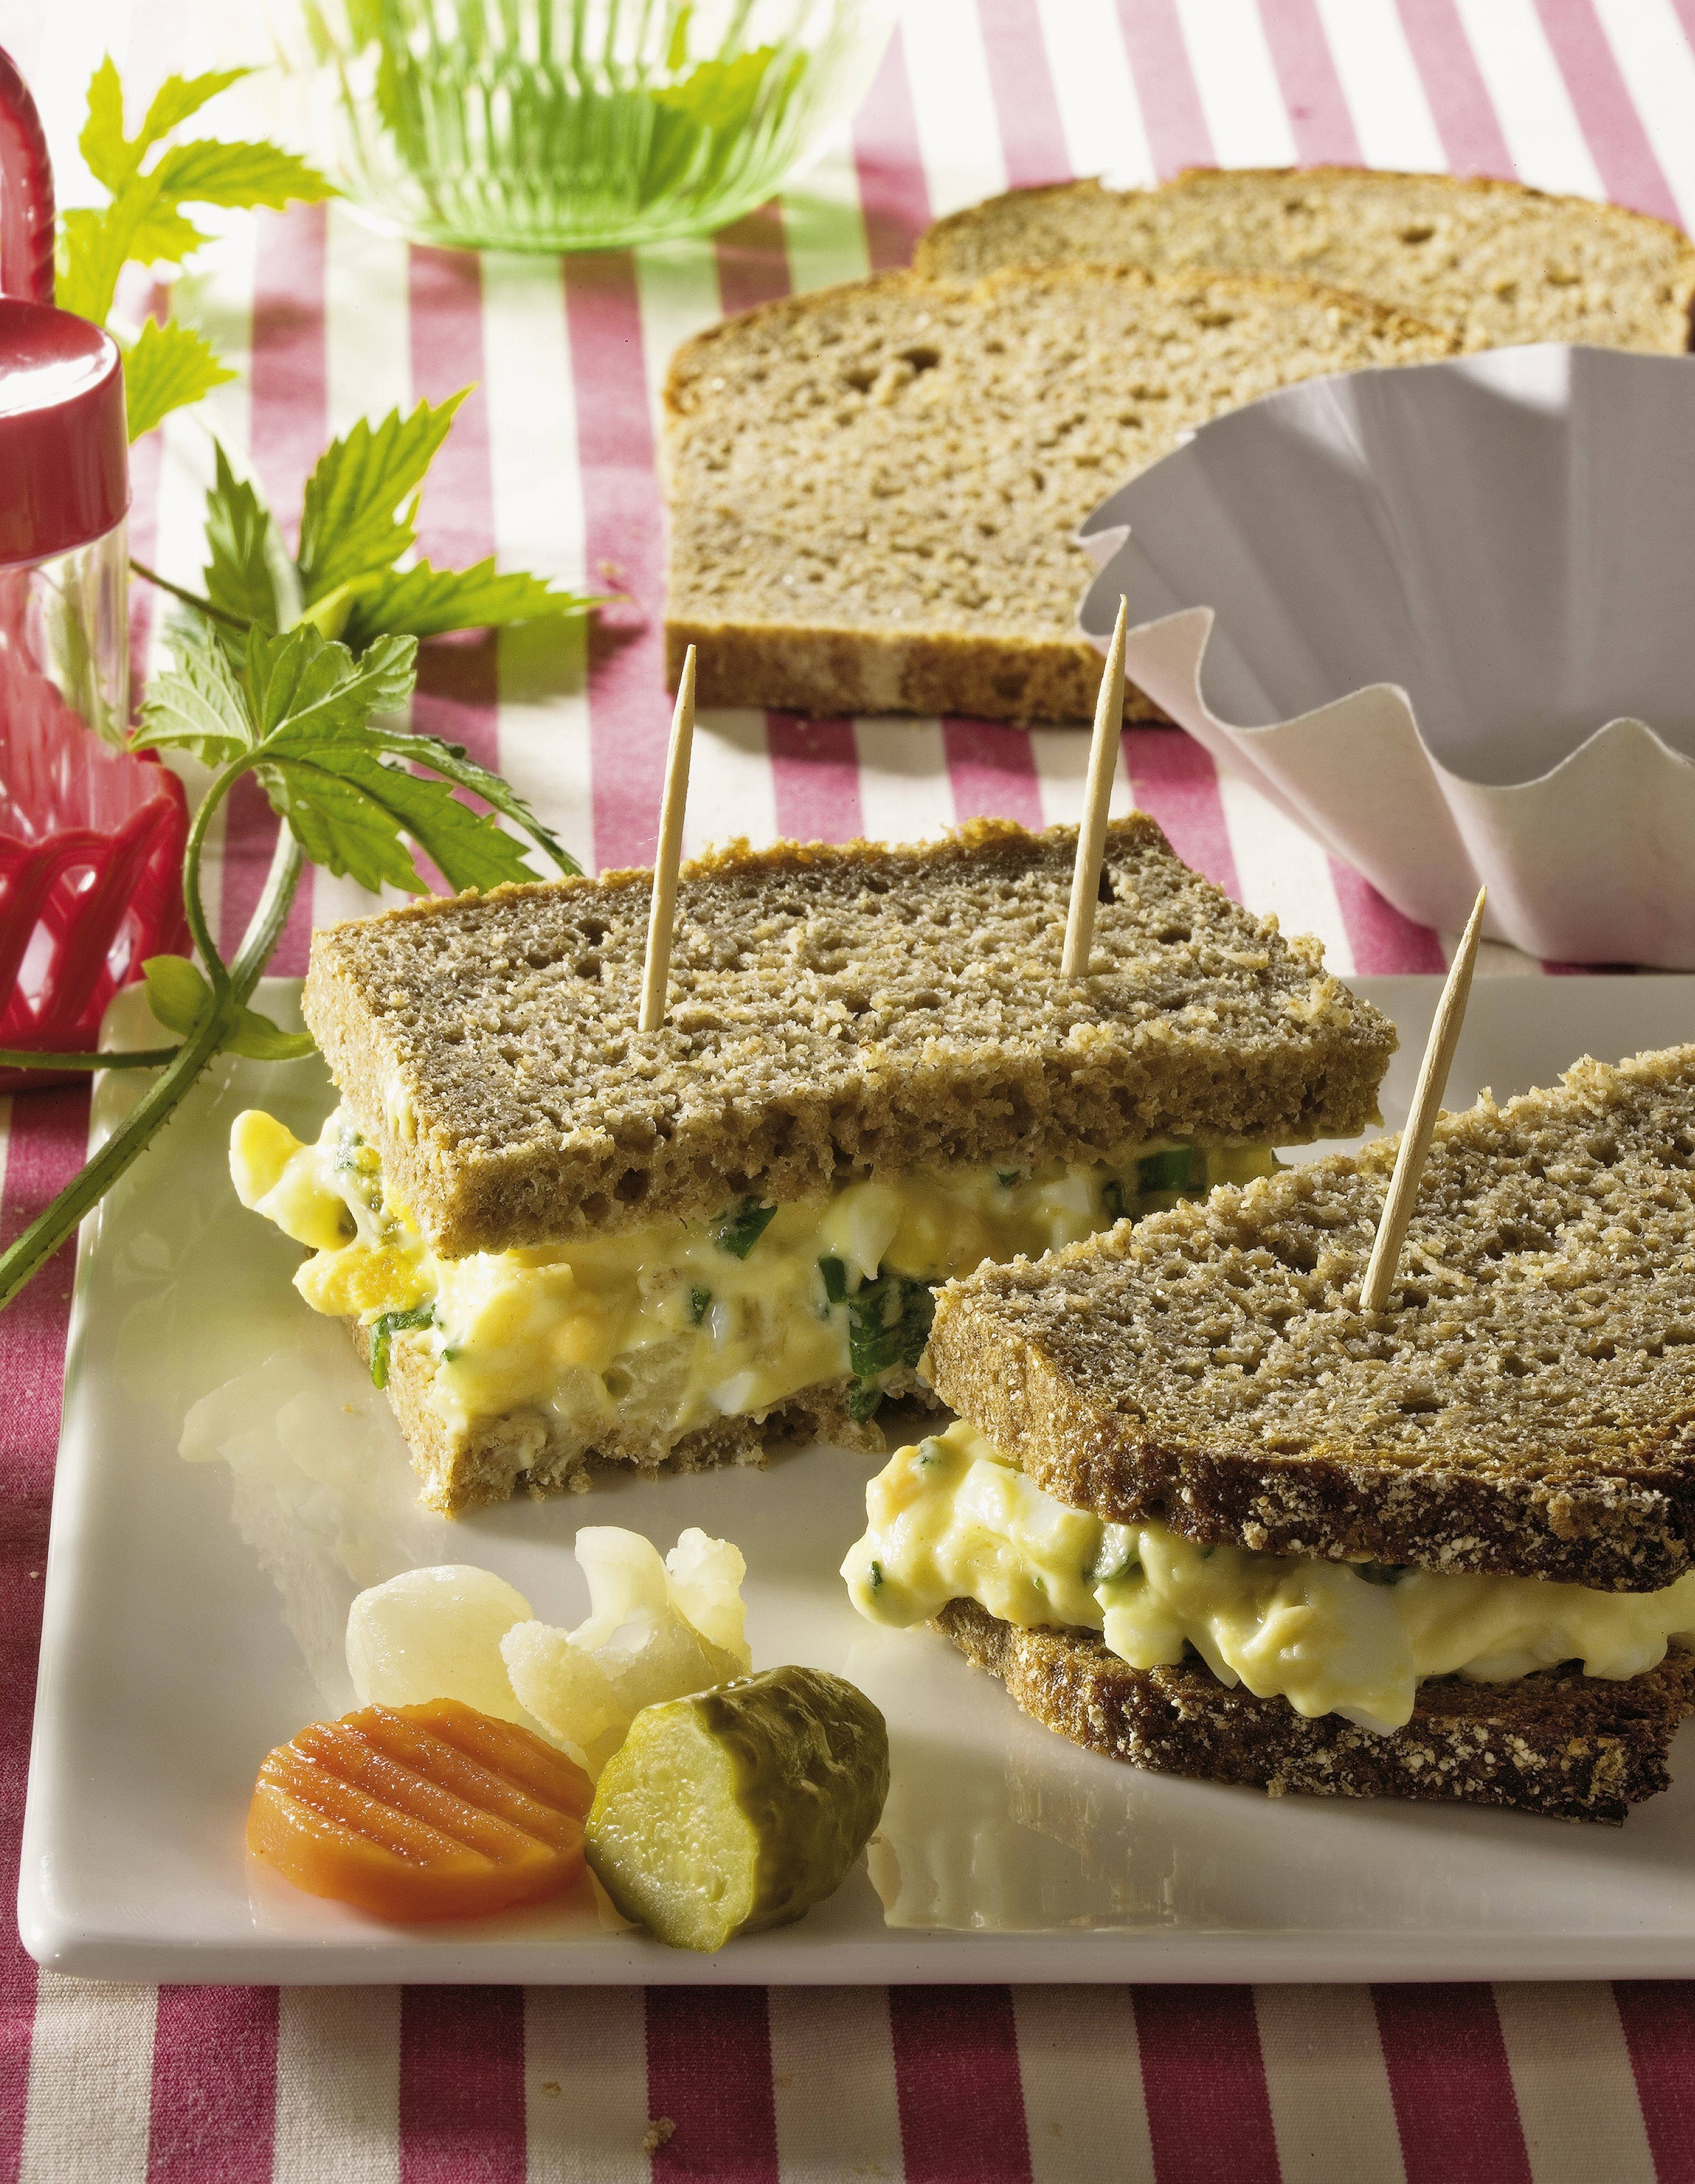 Knorr - Sandwich Spread